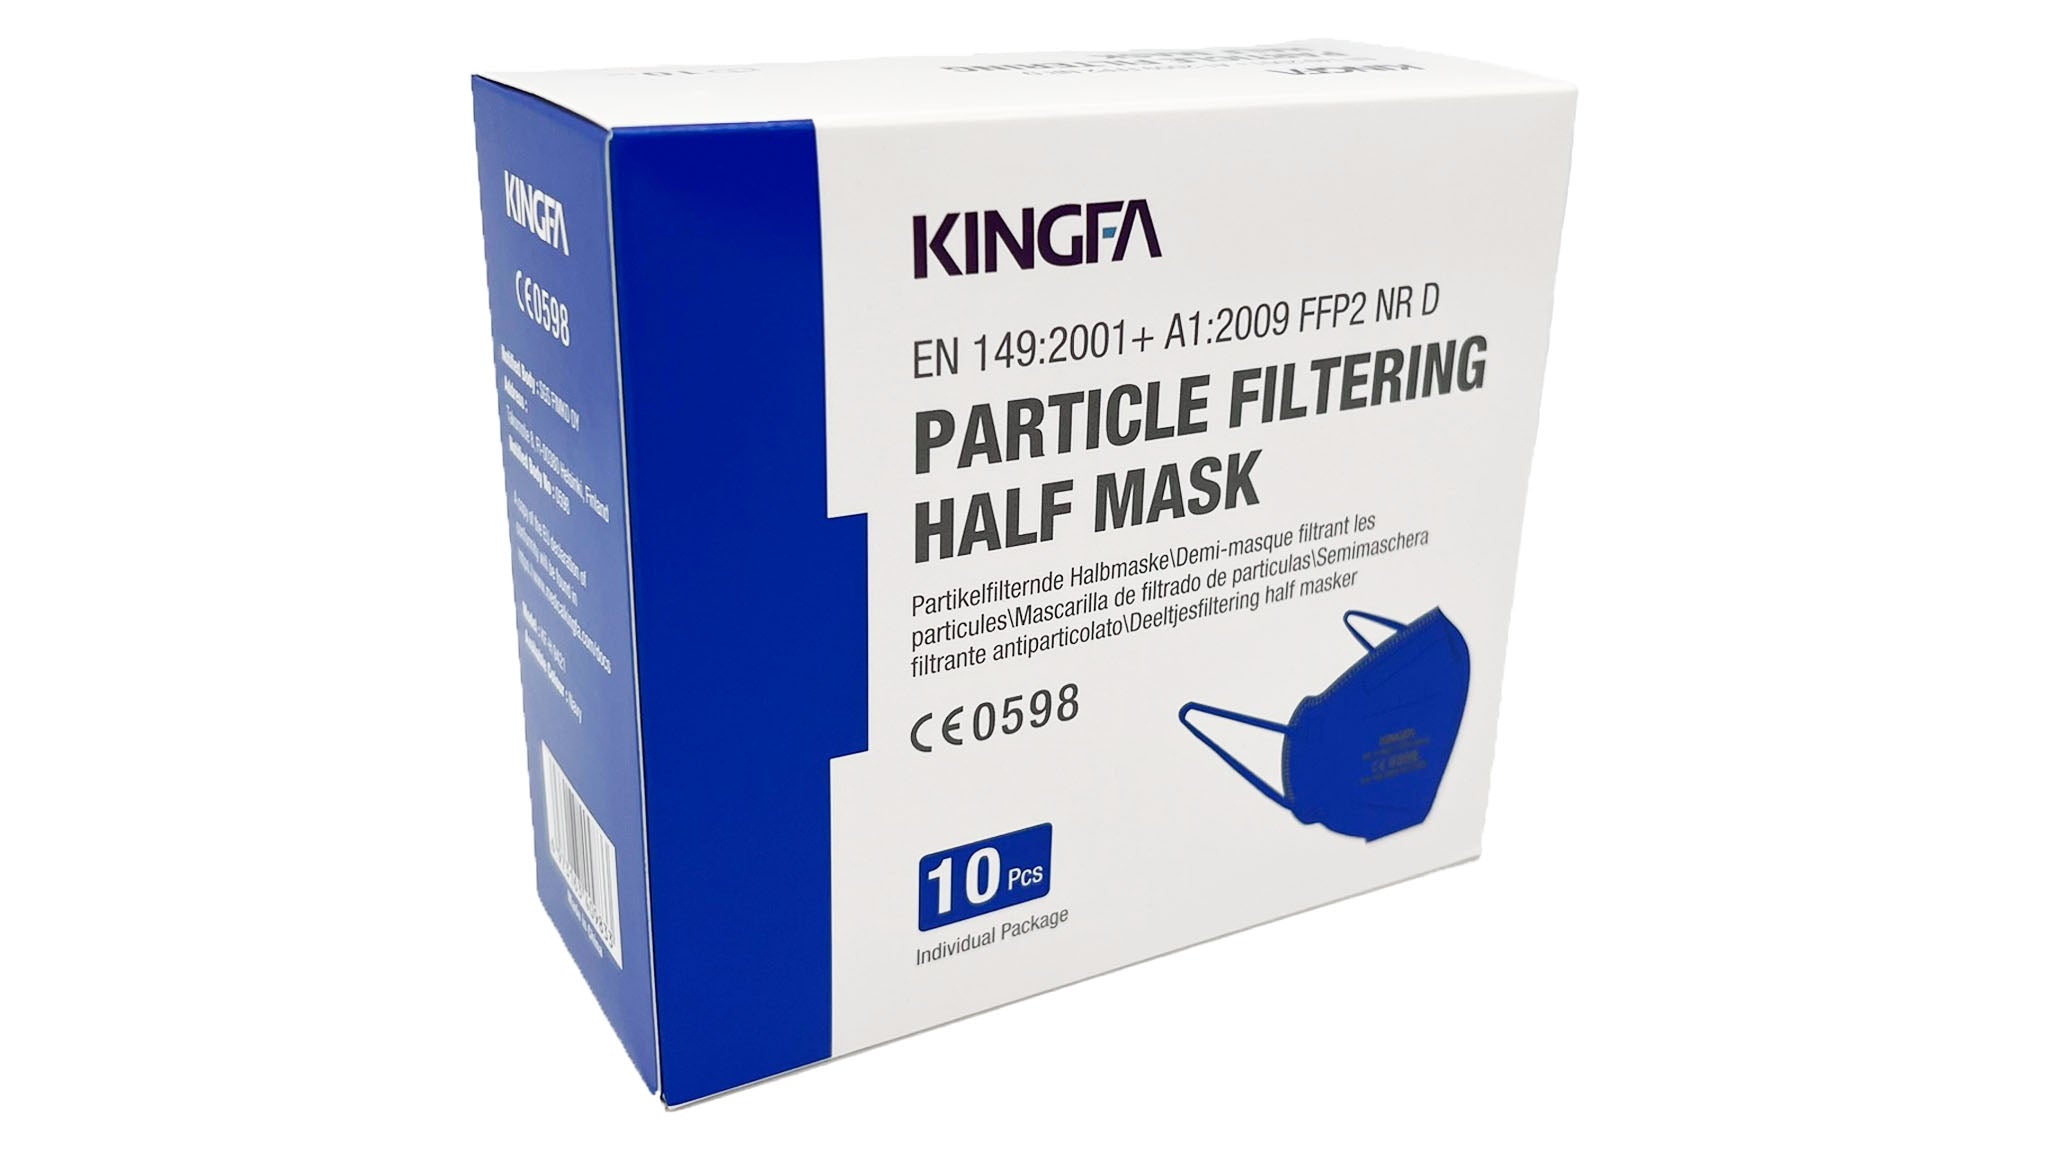 Kingfa FFP2 Masken einzeln eingeschweißt (10 Masken je Box) - blau